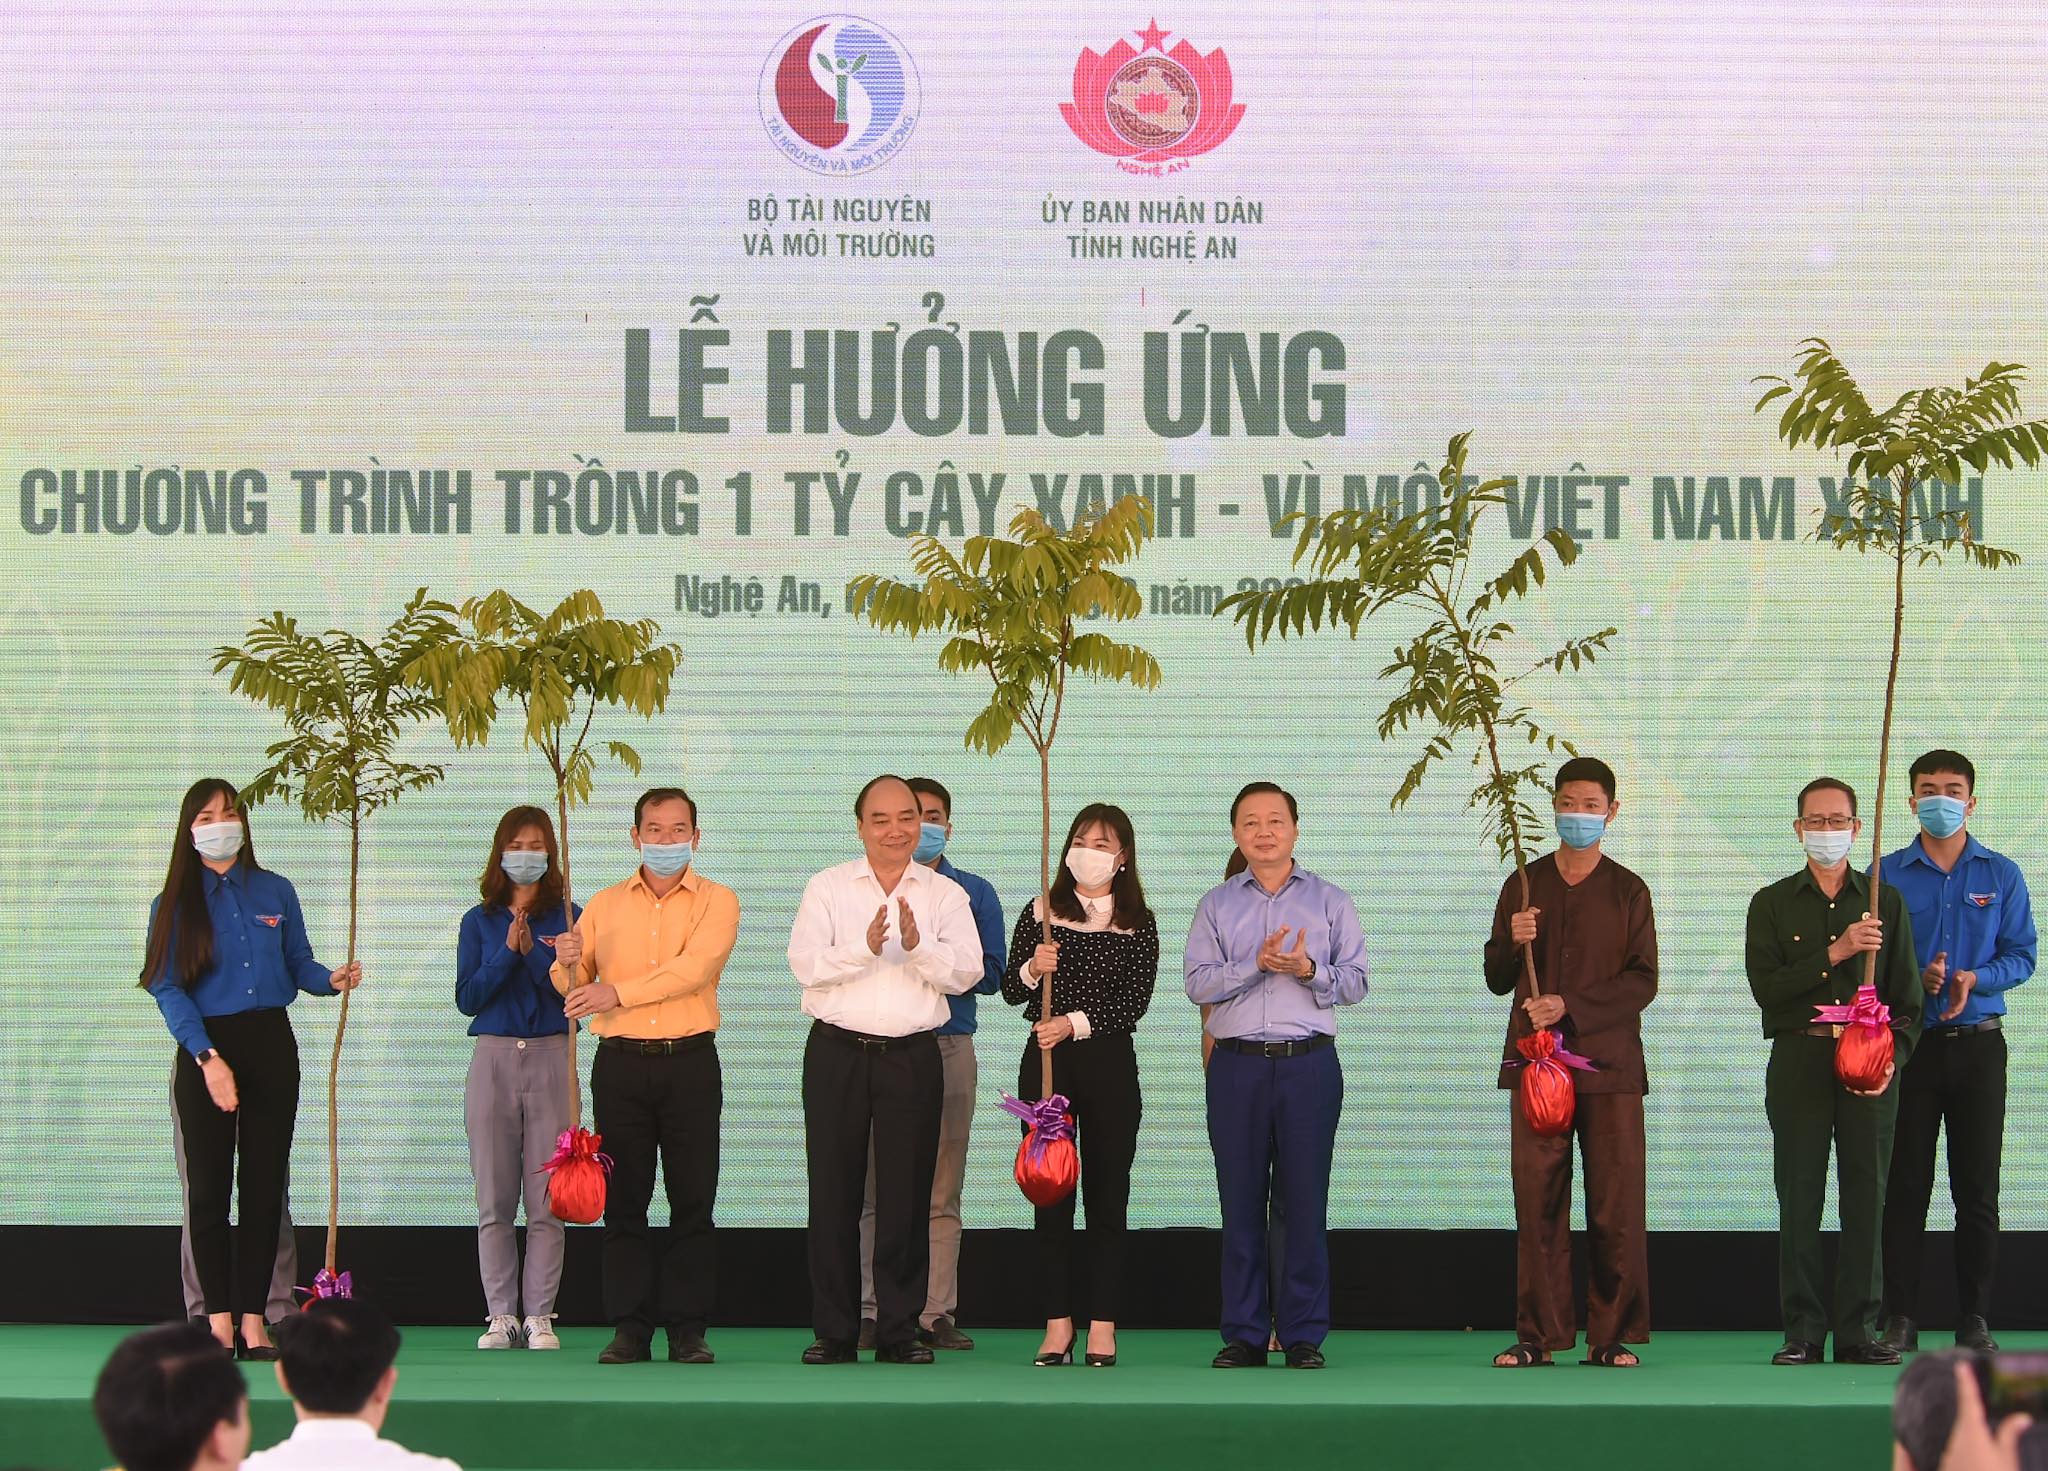 Thủ tướng Nguyễn Xuân Phúc dự lễ hưởng ứng chương trình trồng 1 tỷ cây xanh tại Nghệ An. Ảnh: VGP/Quang Hiếu